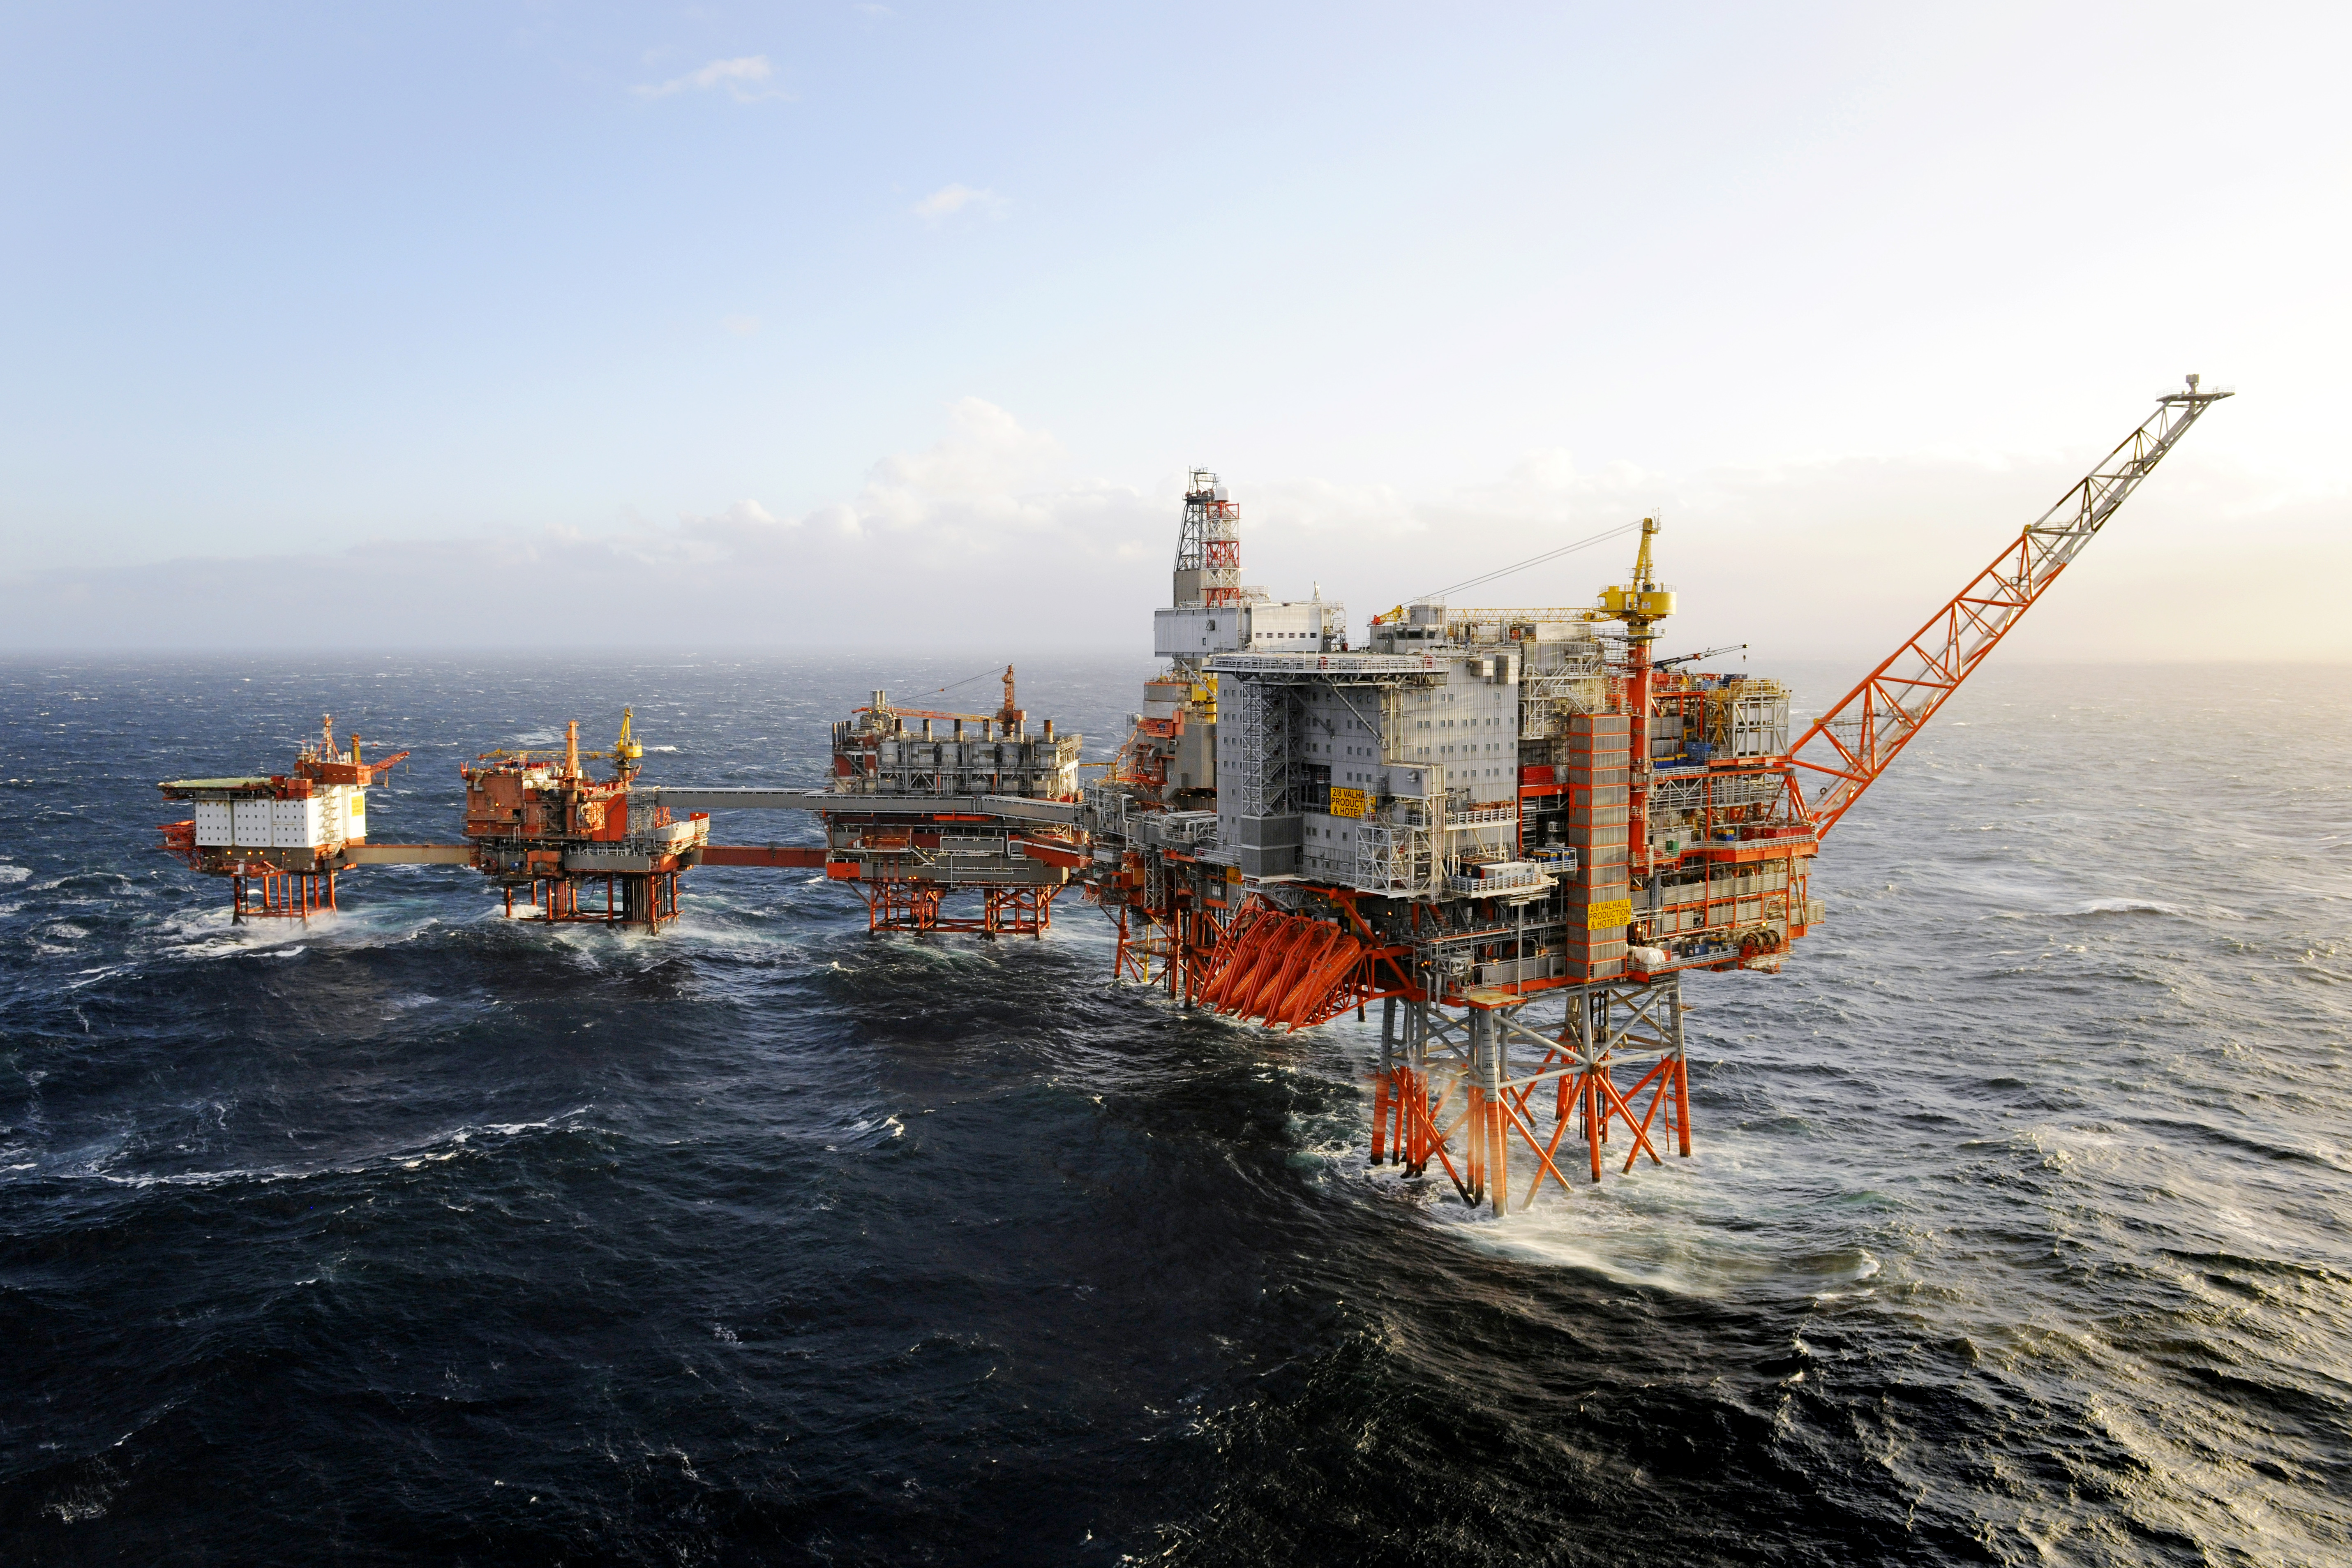 Добыча на английском. Нефтяная платформа "Дропнер" 1995. Хайберния нефтяная платформа. Нефтедобыча в Северном море. Баренцево море нефтедобыча.